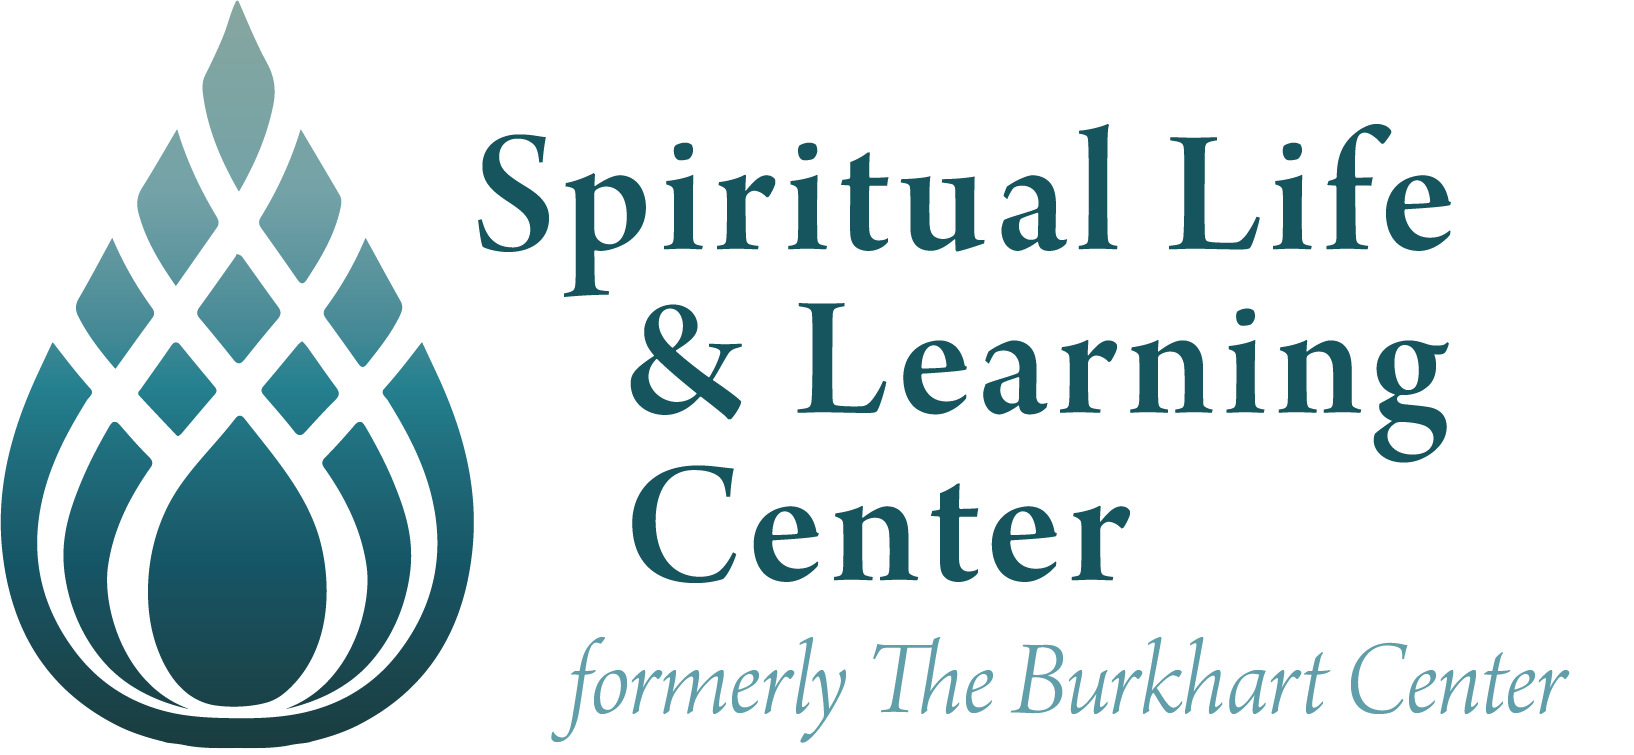 Spiritual Life & Learning Center formerly the Burkhart Center